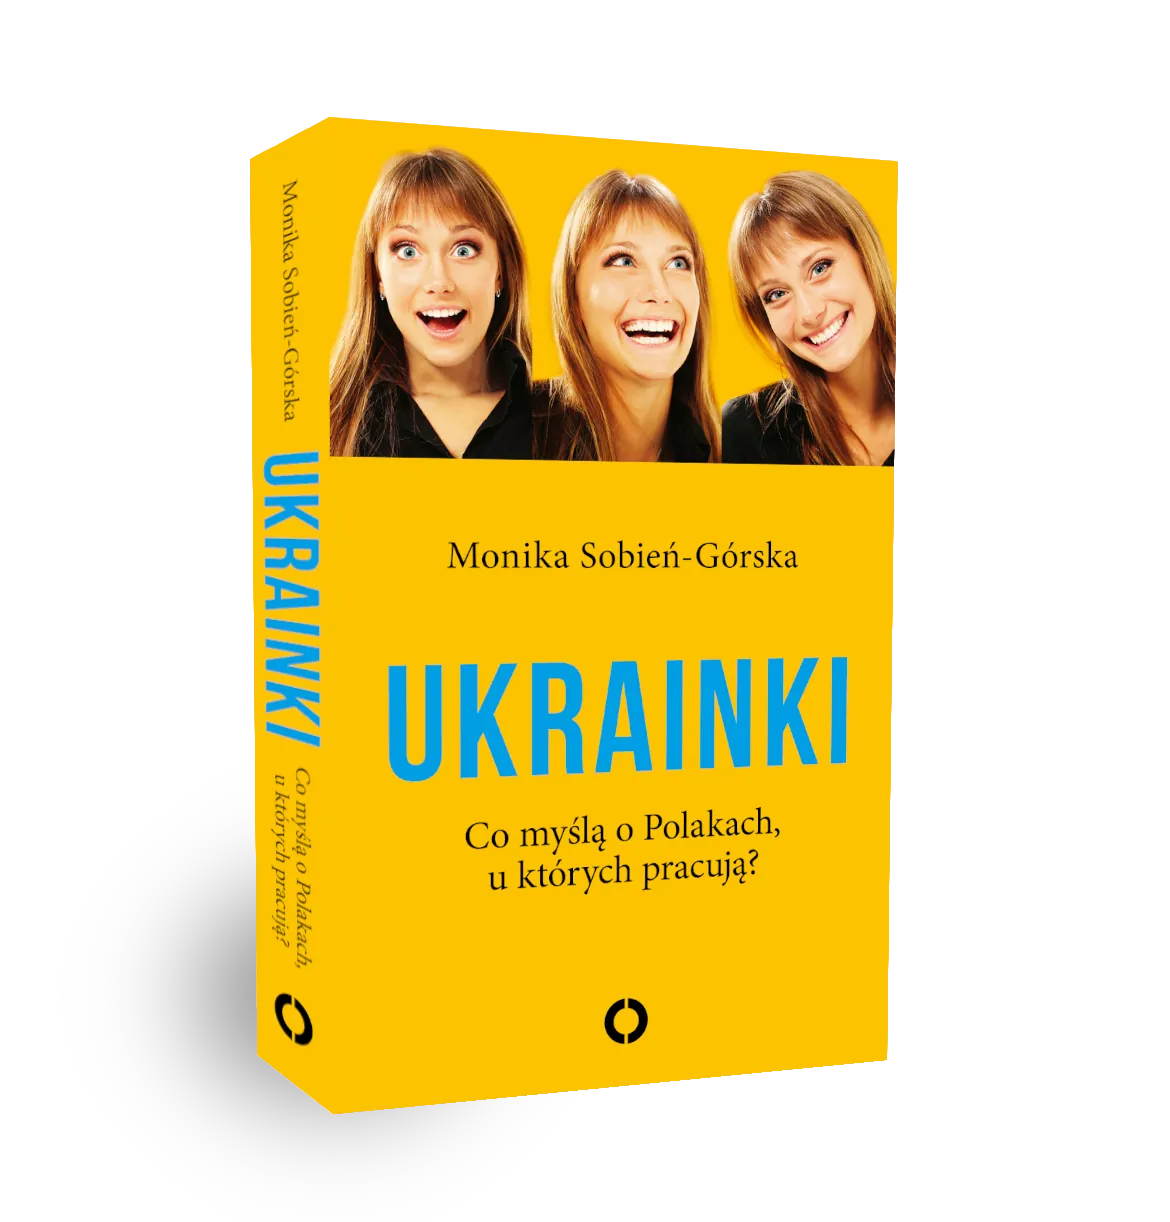 Okładka książki "Ukrainki"